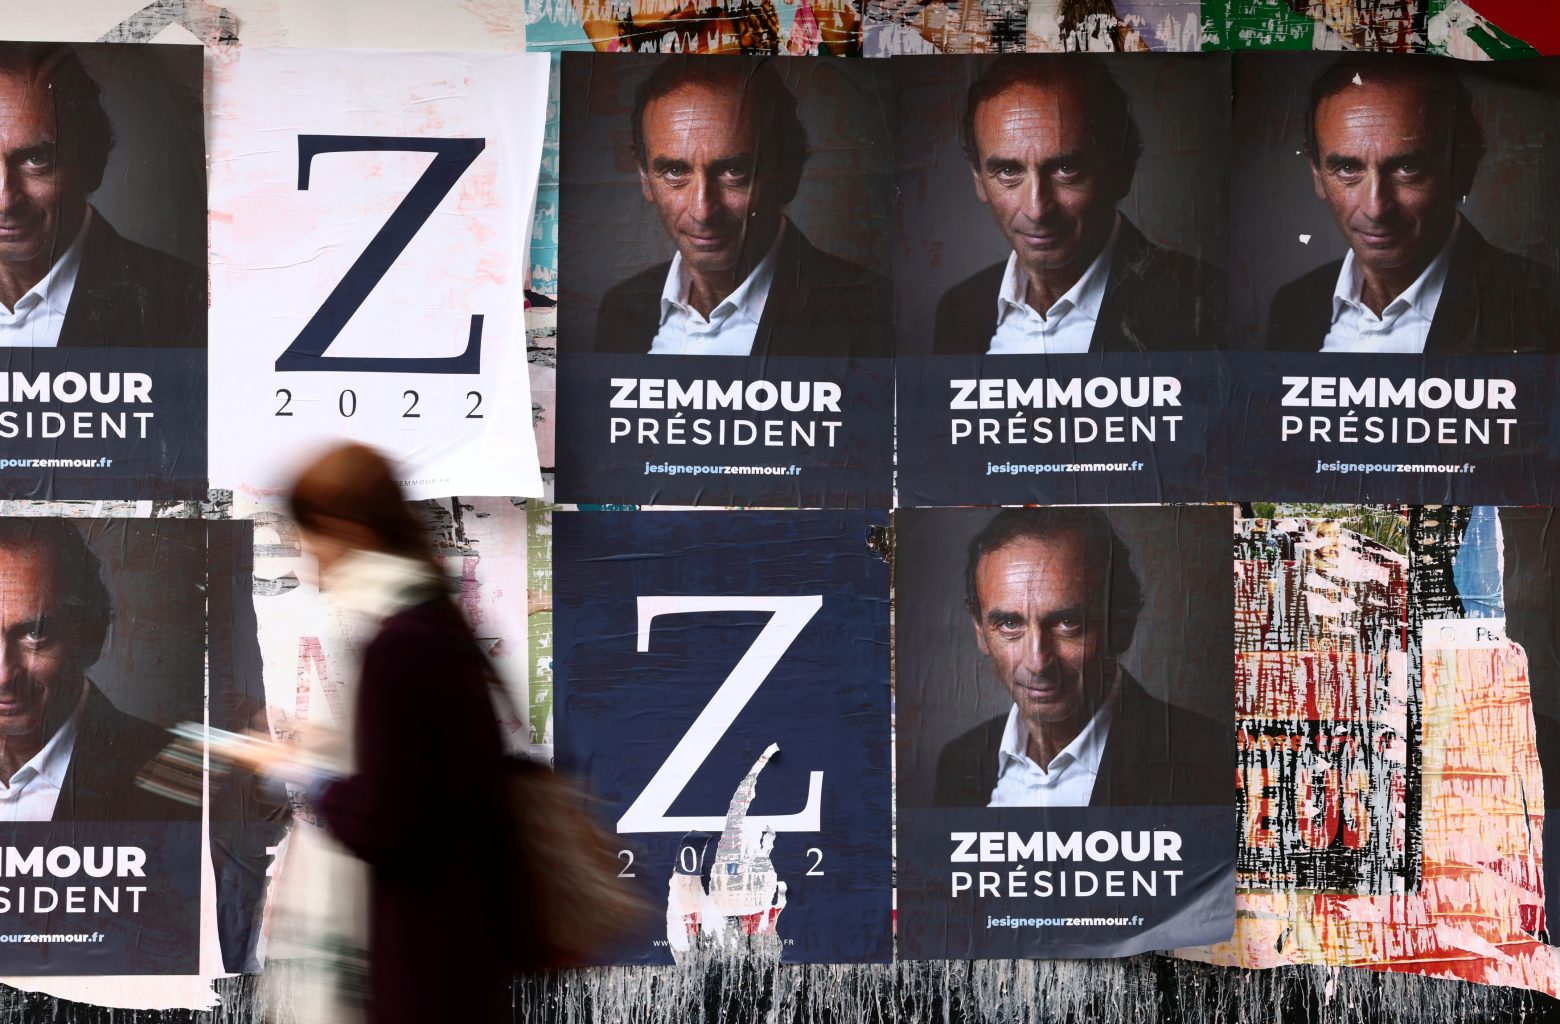 Γαλλία - Γιατί ο Ερίκ Ζεμούρ προσπαθεί να υπερασπιστεί το καθεστώς του Βισύ